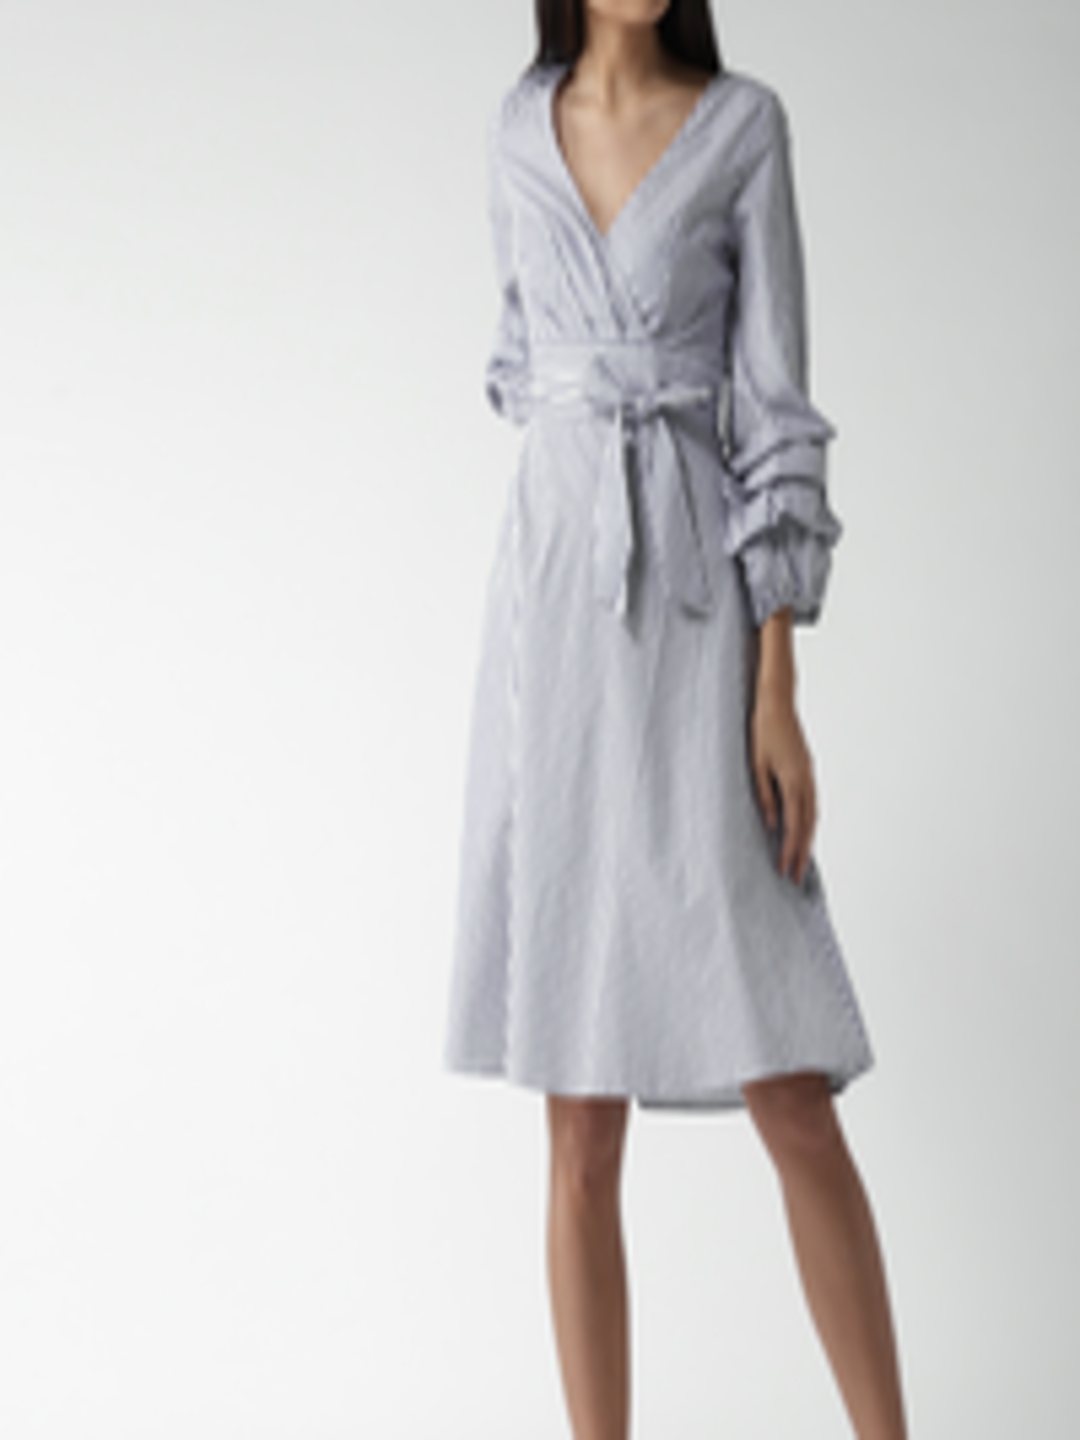 Buy FOREVER 21 Women Blue & White Striped Wrap Dress - Dresses for